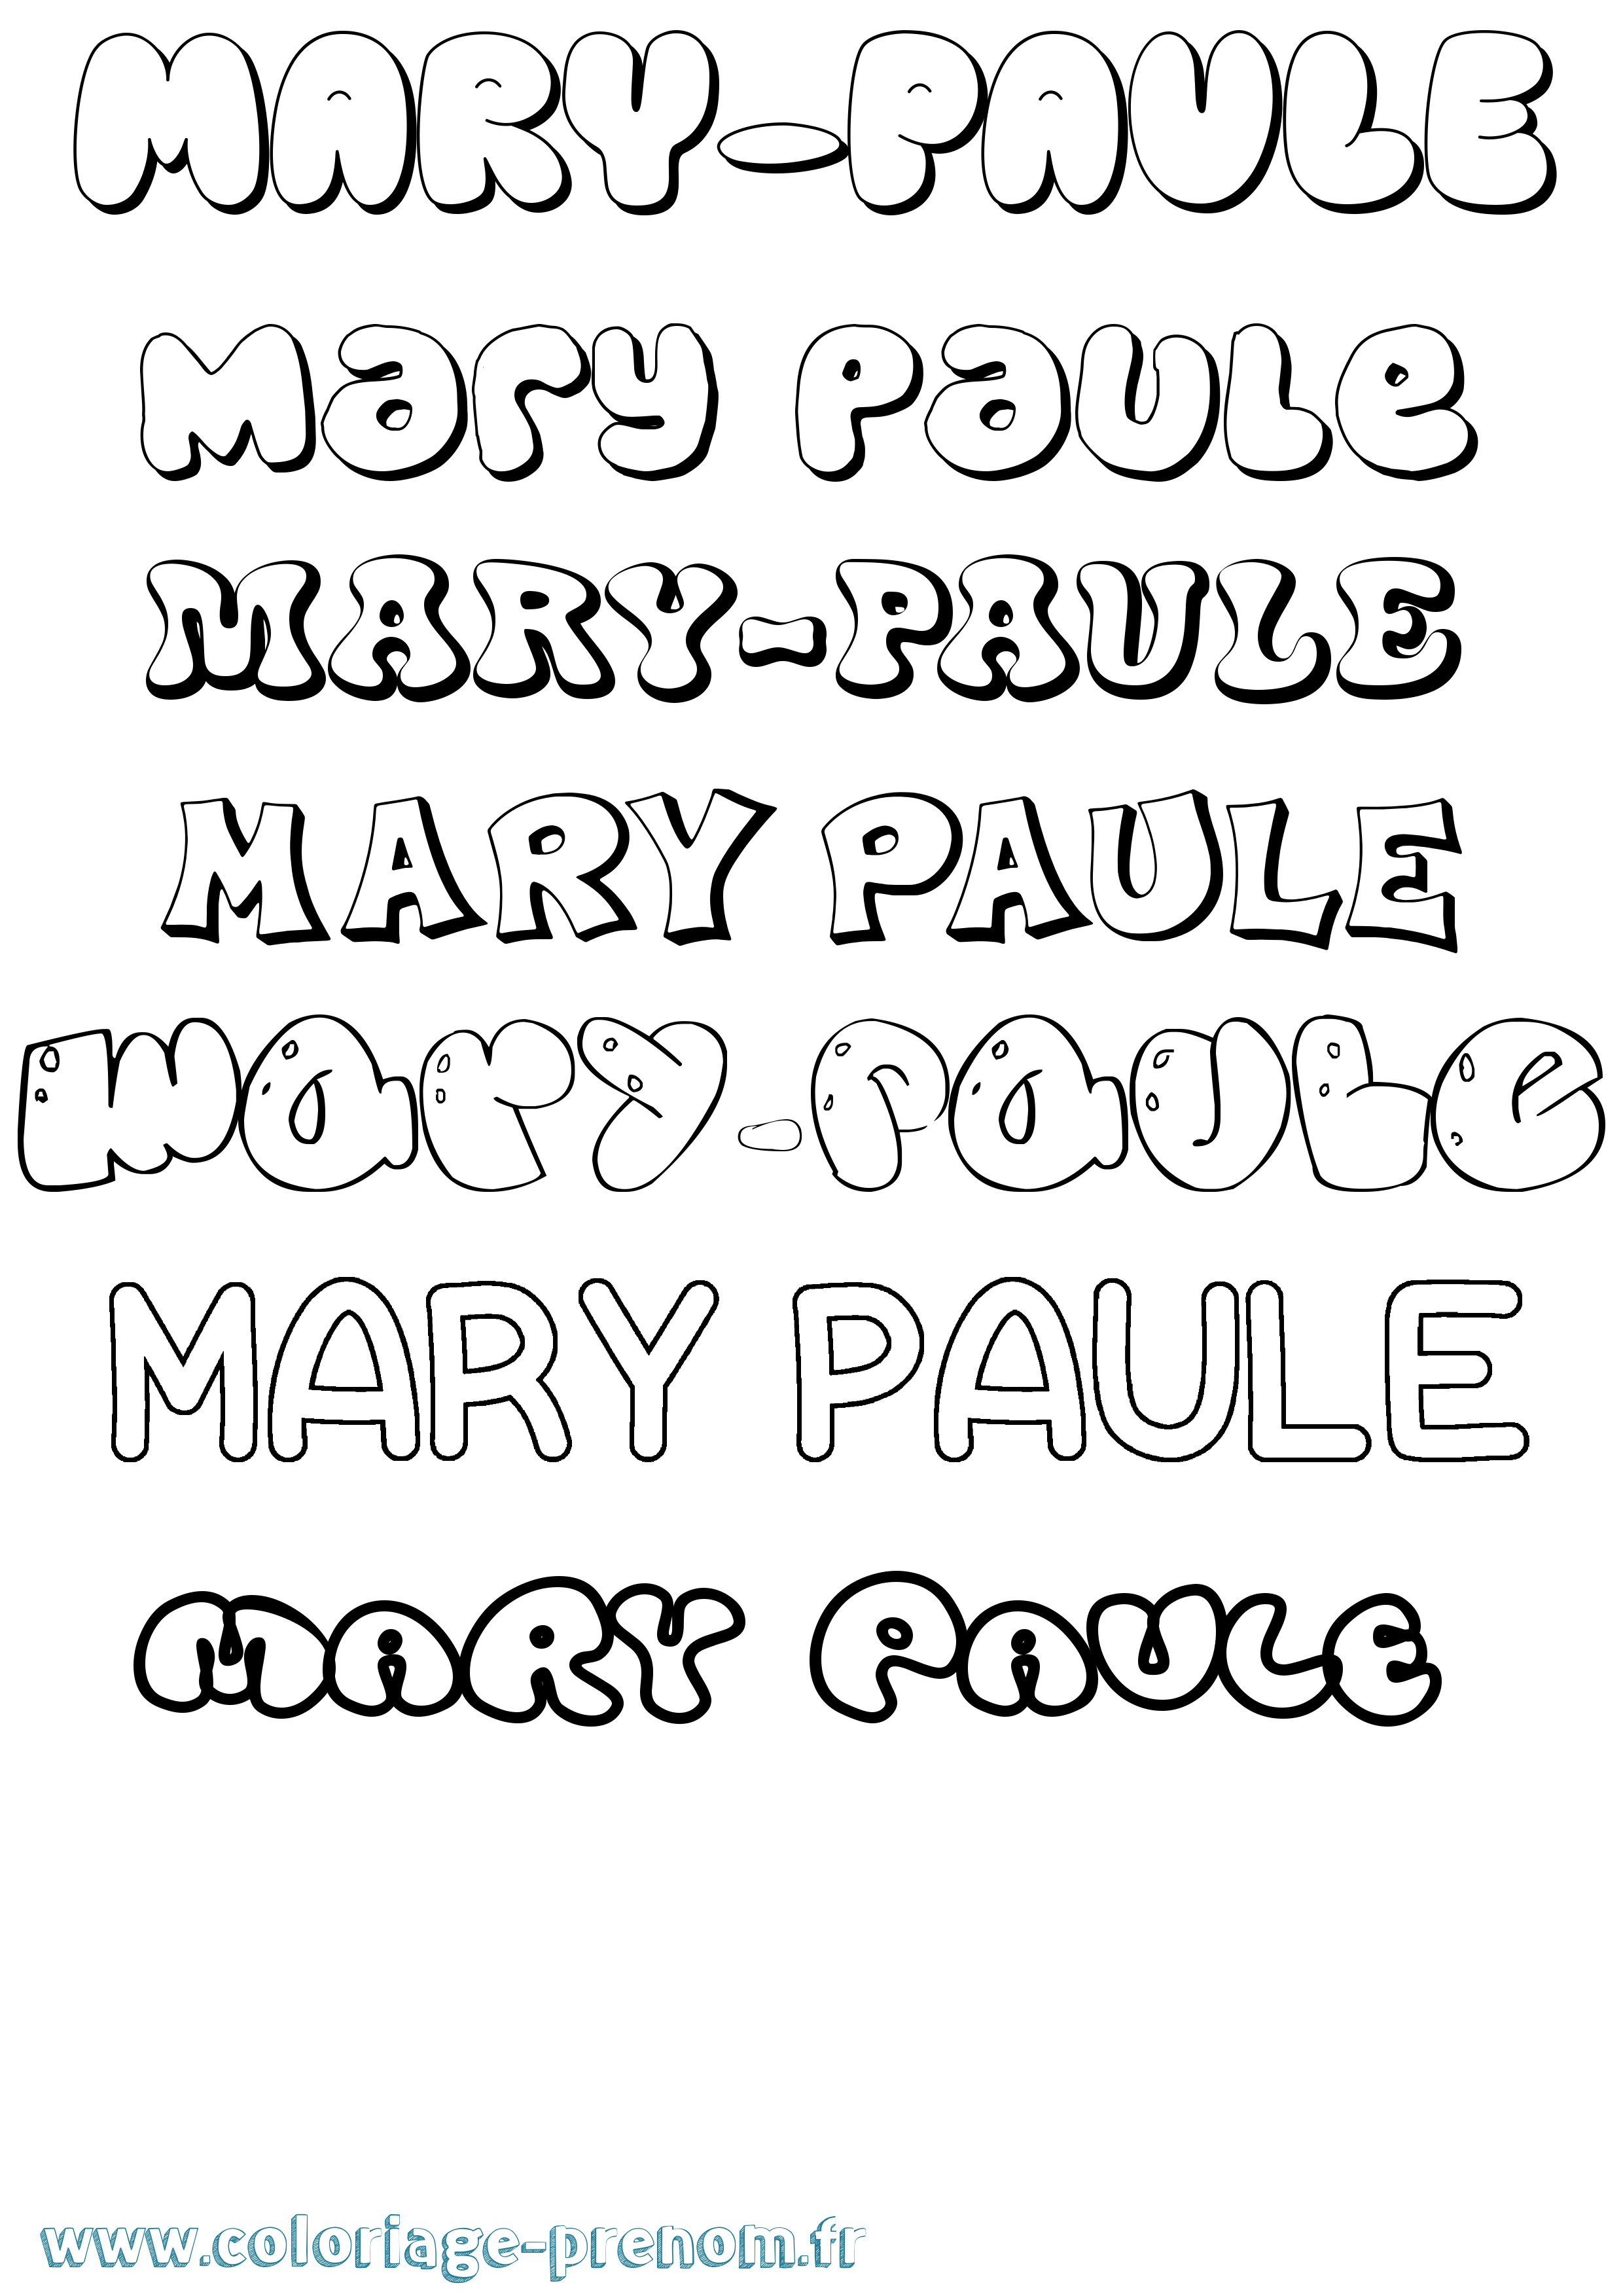 Coloriage prénom Mary-Paule Bubble